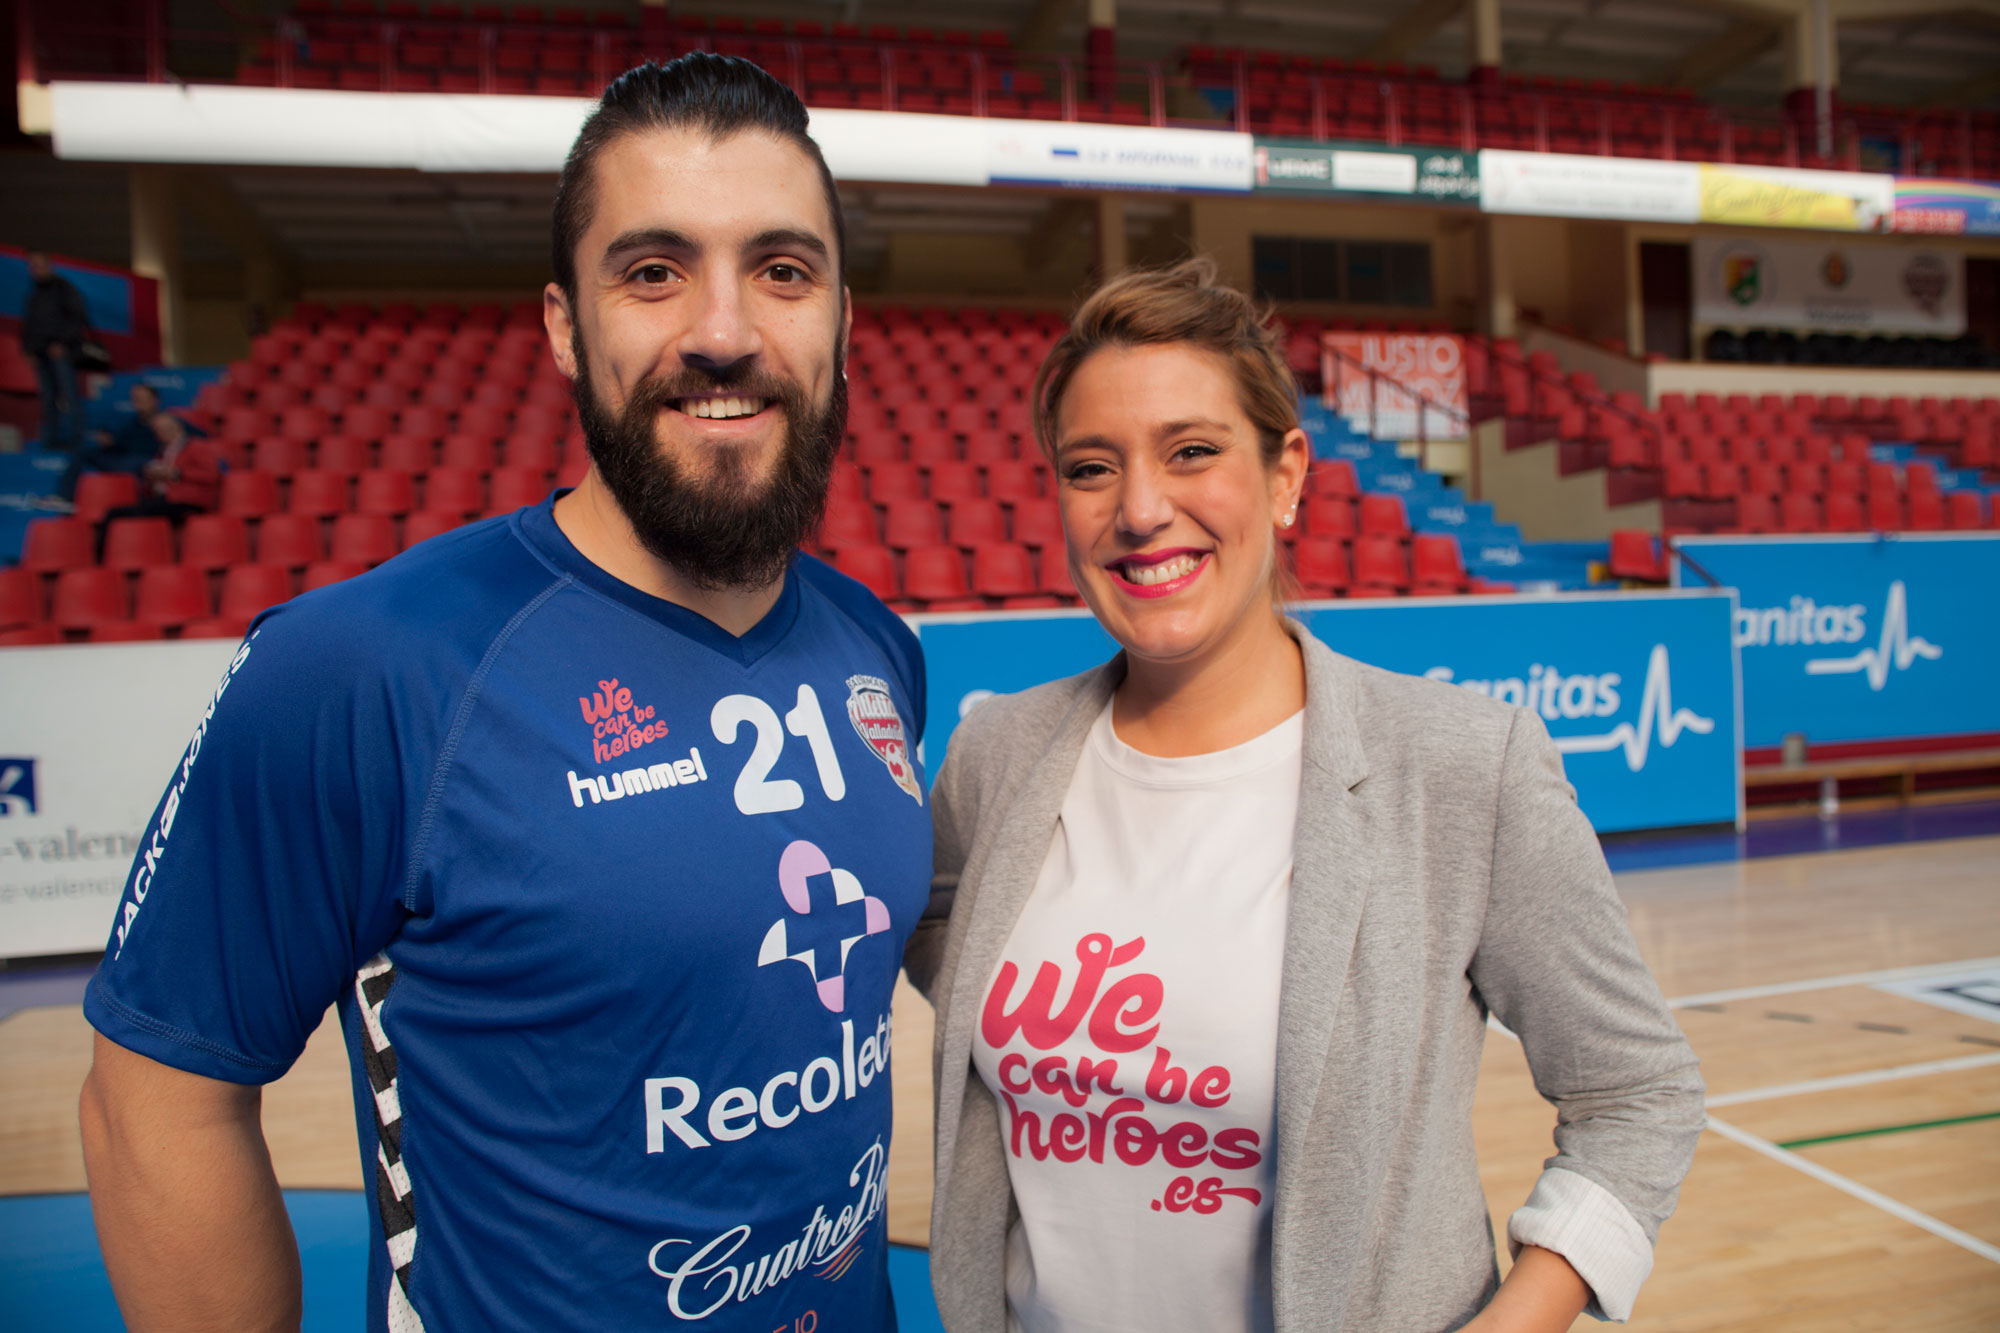 El Atlético Valladolid Recoletas colaborará con la asociación We can be heroes en su lucha contra el cáncer